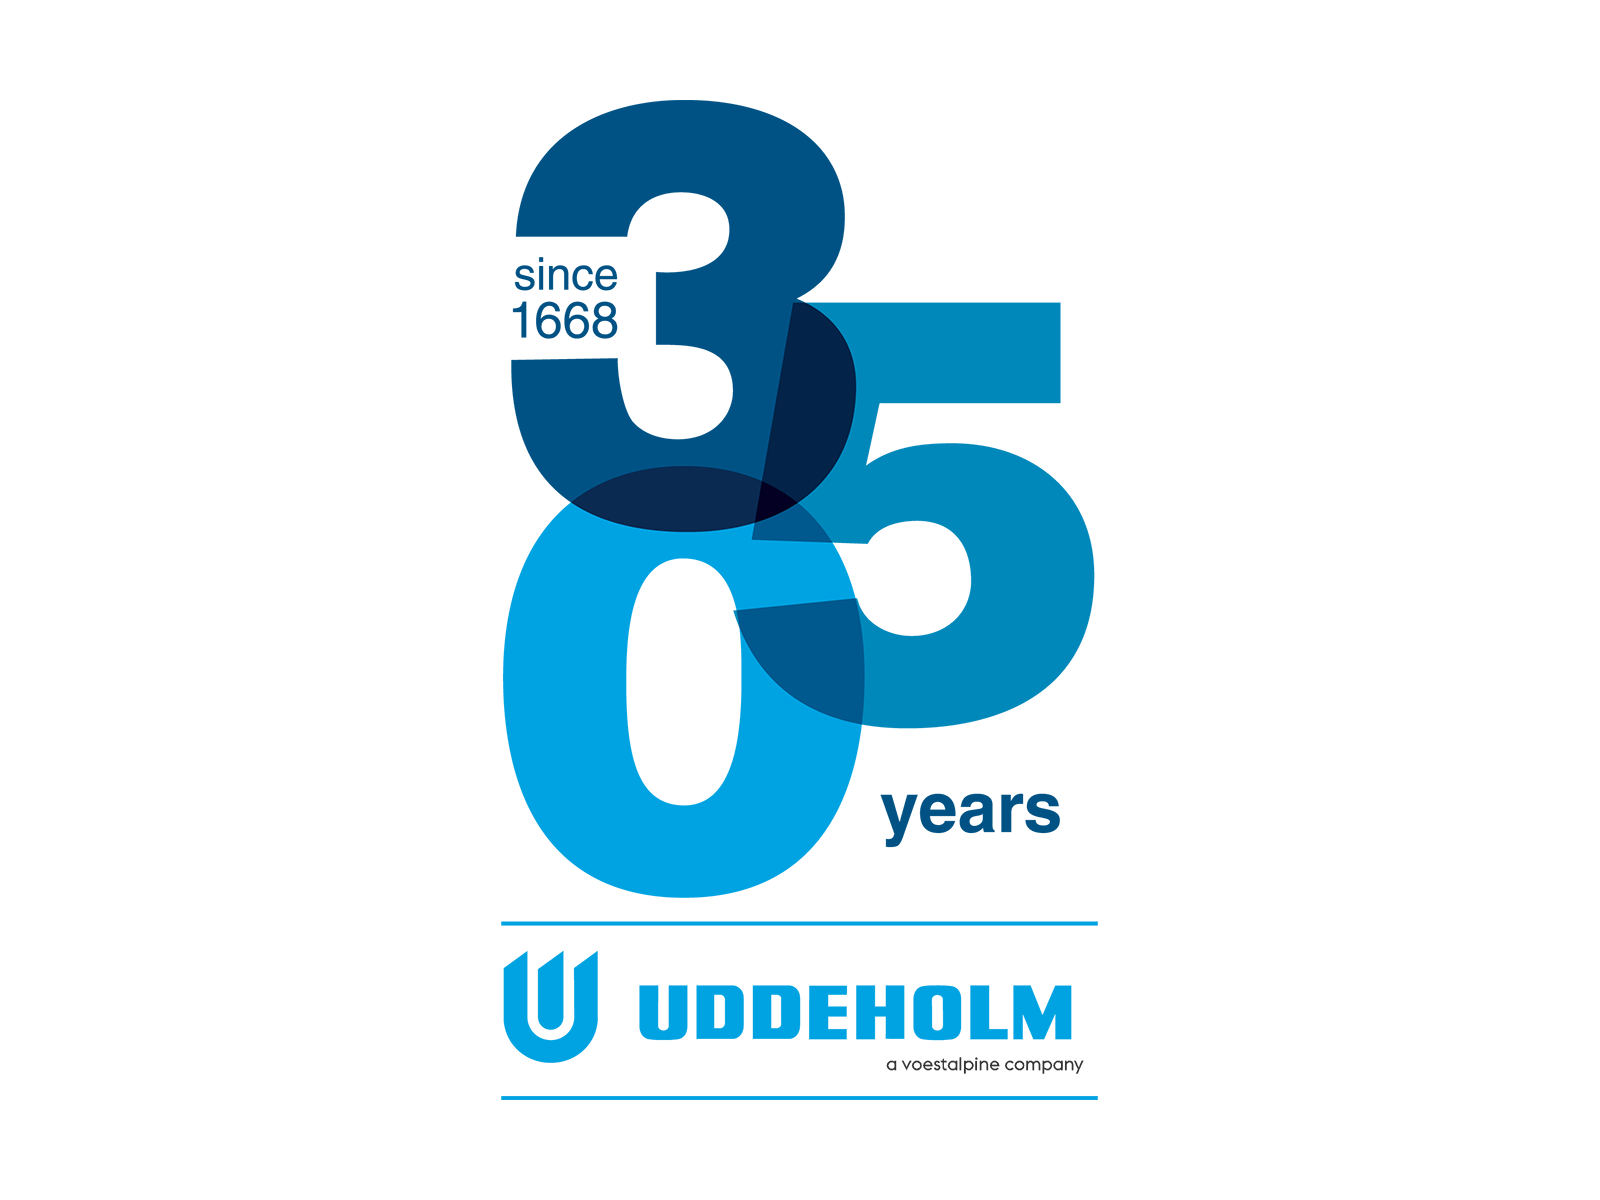 Uddeholm 350 years logo